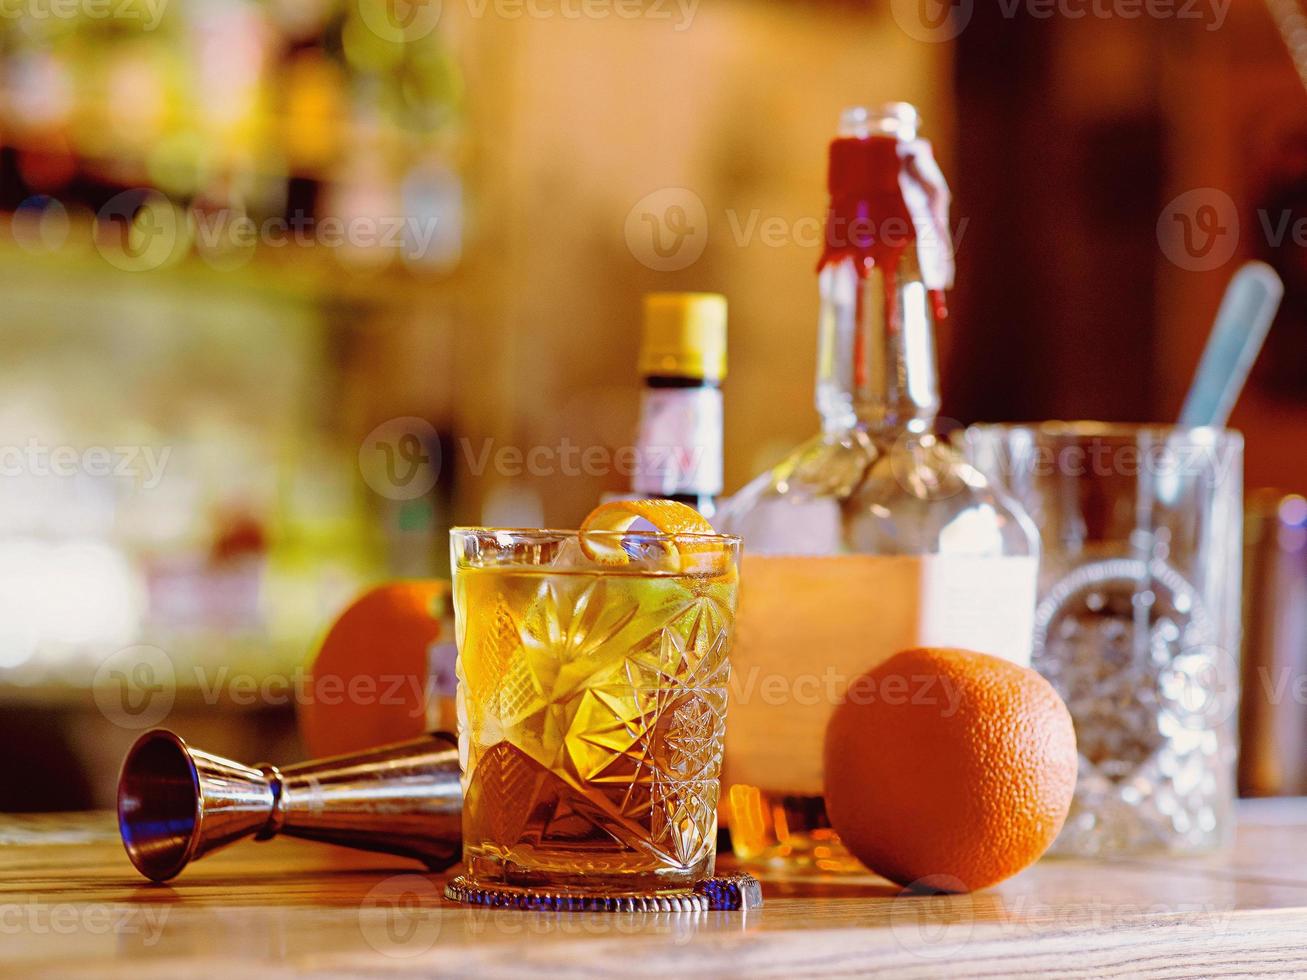 coquetel à moda antiga, laranja, garrafas e copo no balcão do bar foto